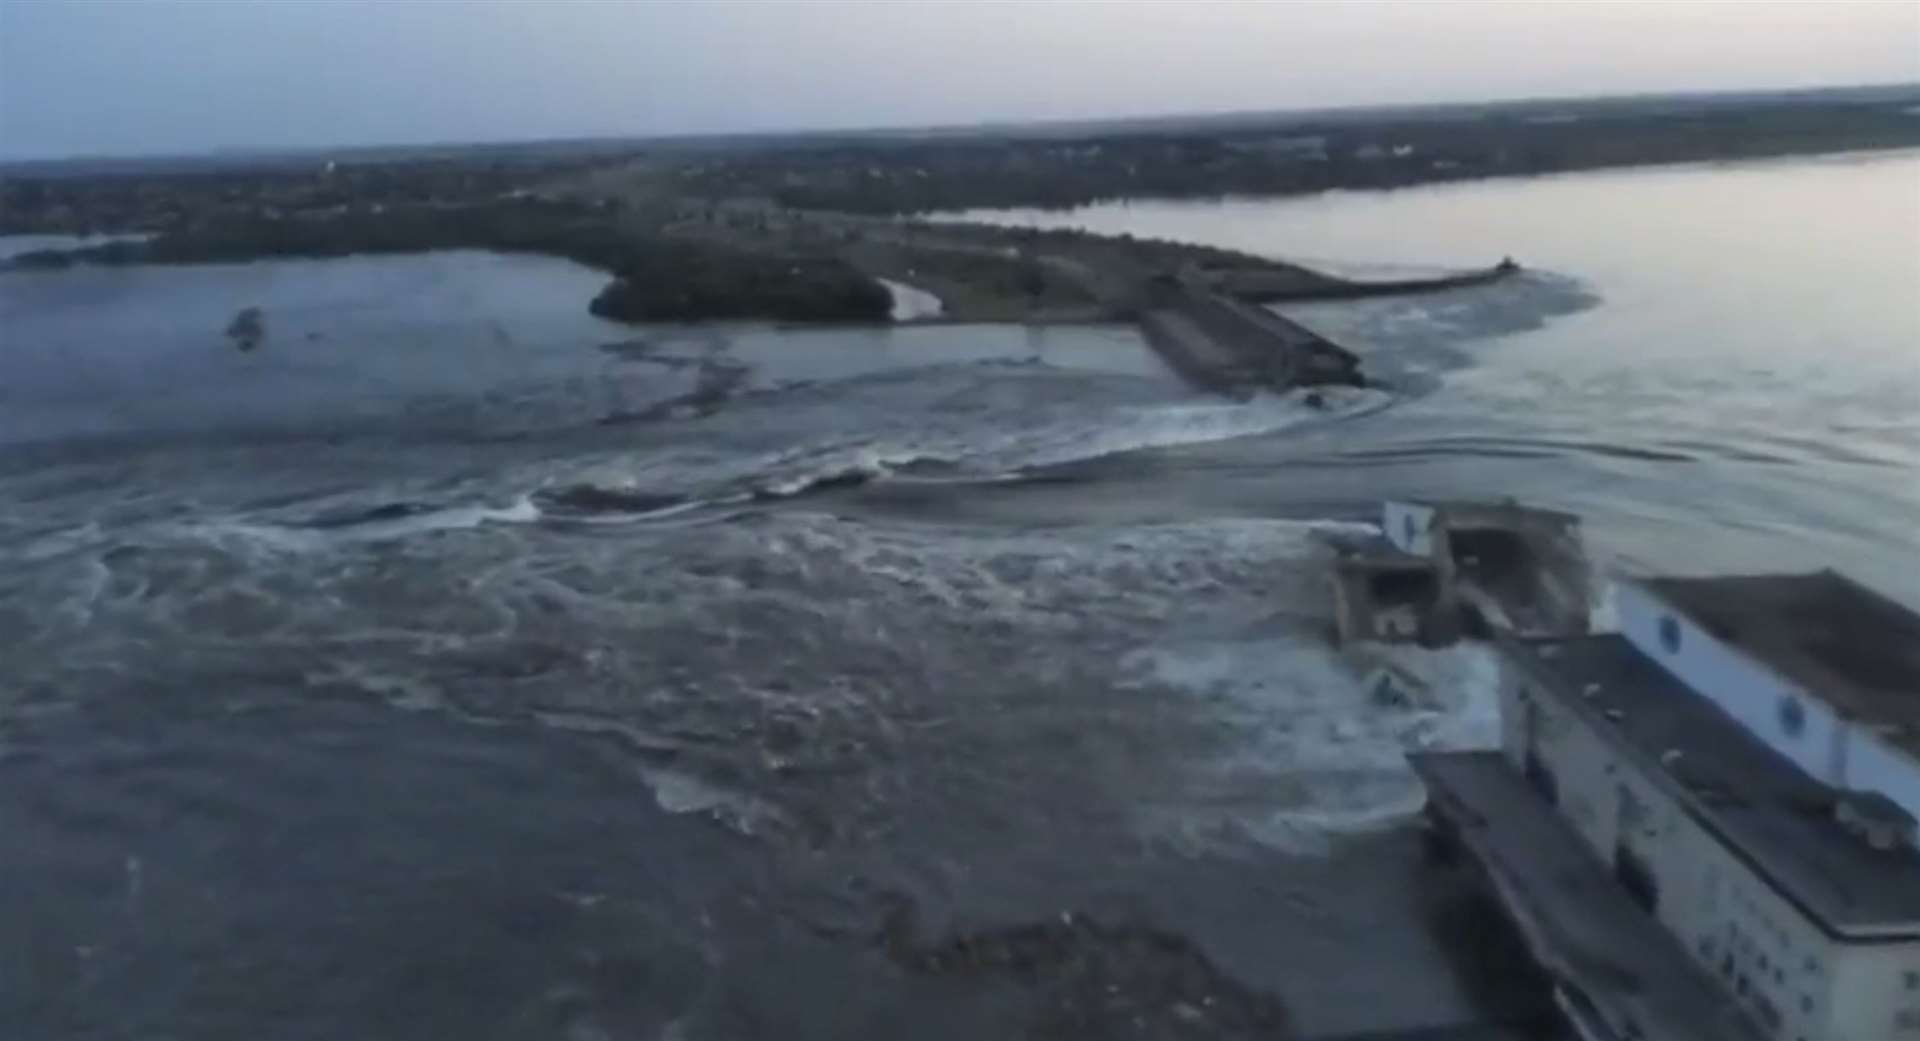 Water runs through a break in the Kakhovka dam in Kakhovka, Ukraine (Ukrainian Presidential Office via AP/PA)